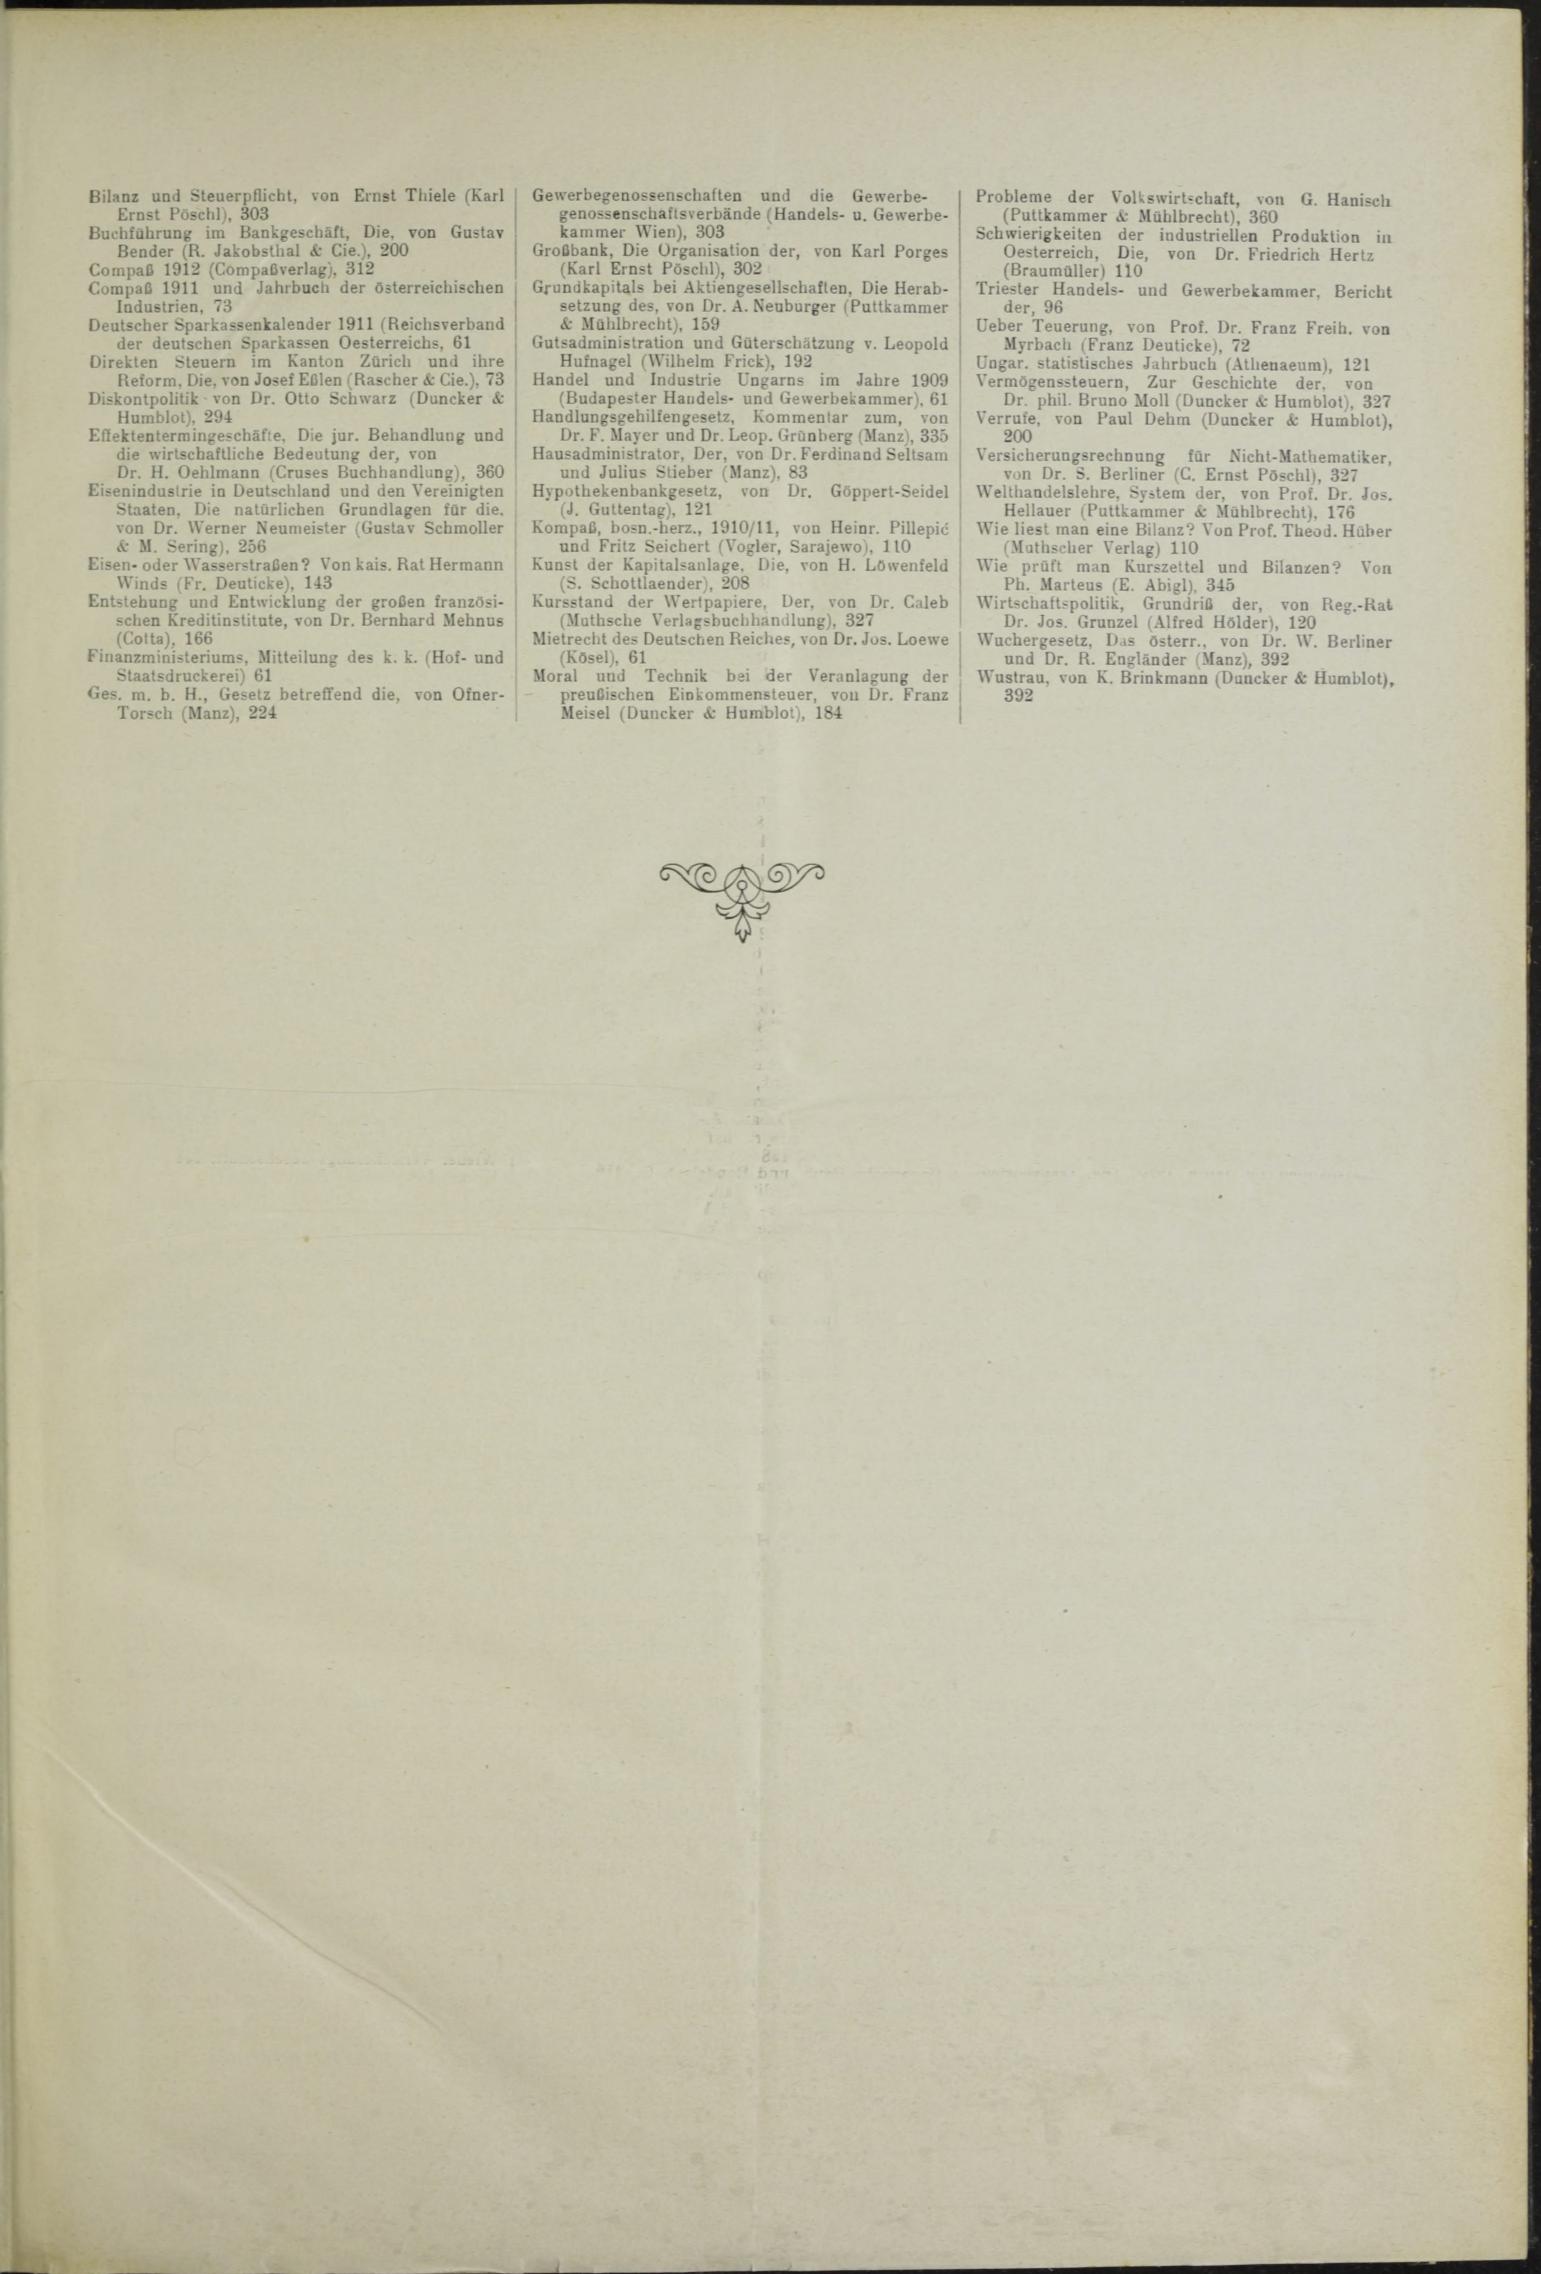 Der Tresor 10.06.1911 - Seite 11